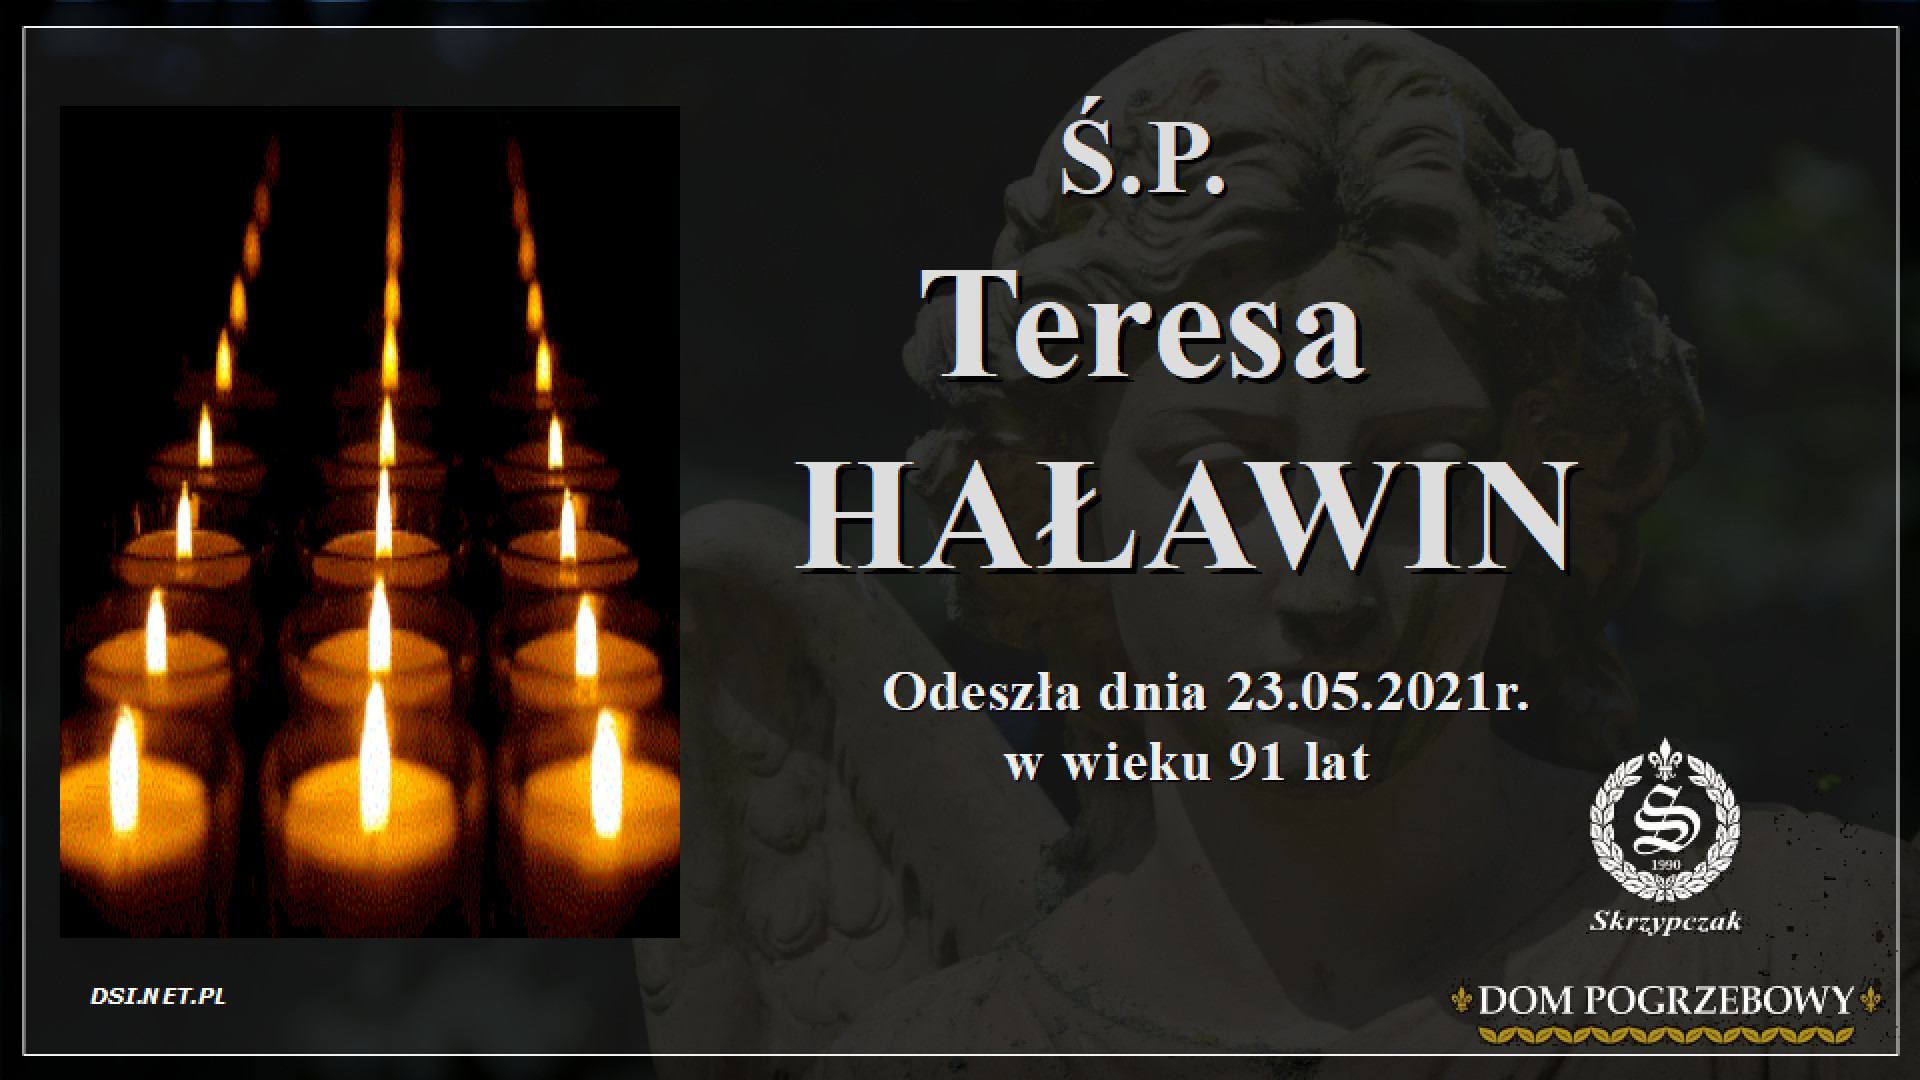 Ś.P. Teresa Haławin